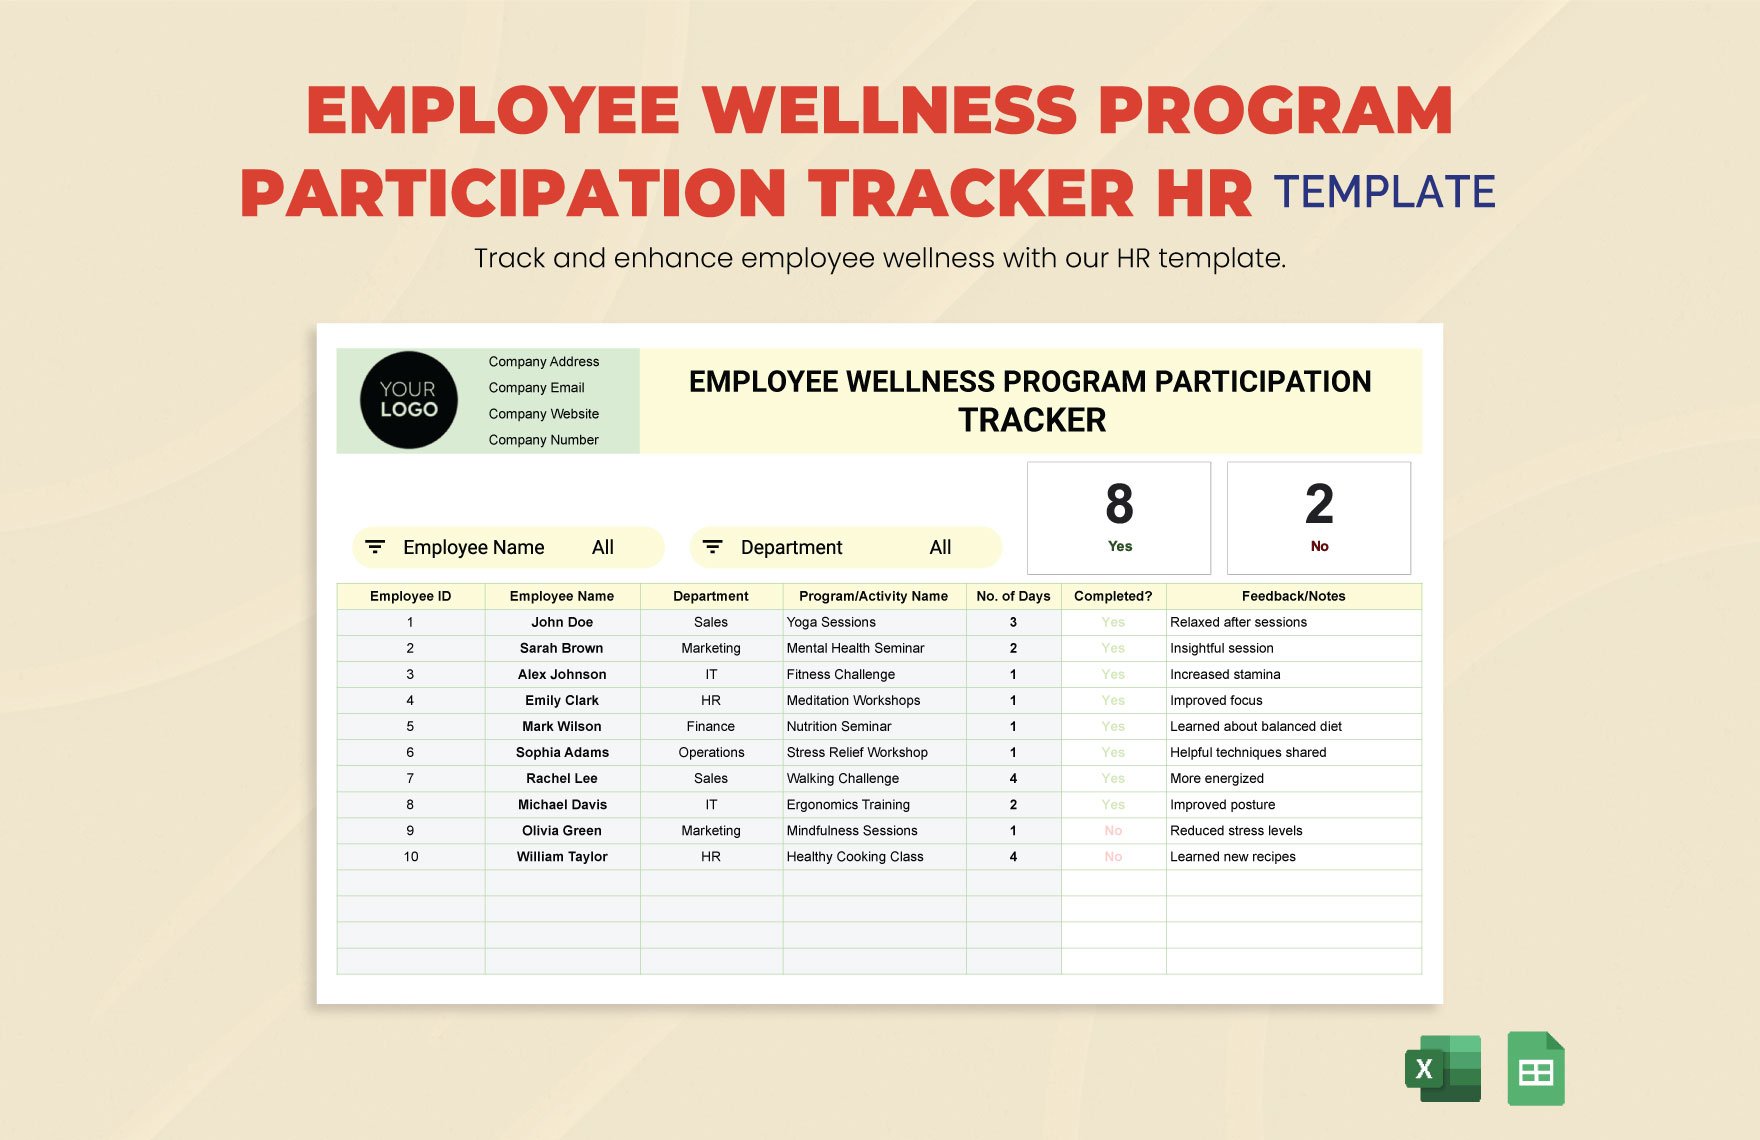 Employee Wellness Program Participation Tracker HR Template